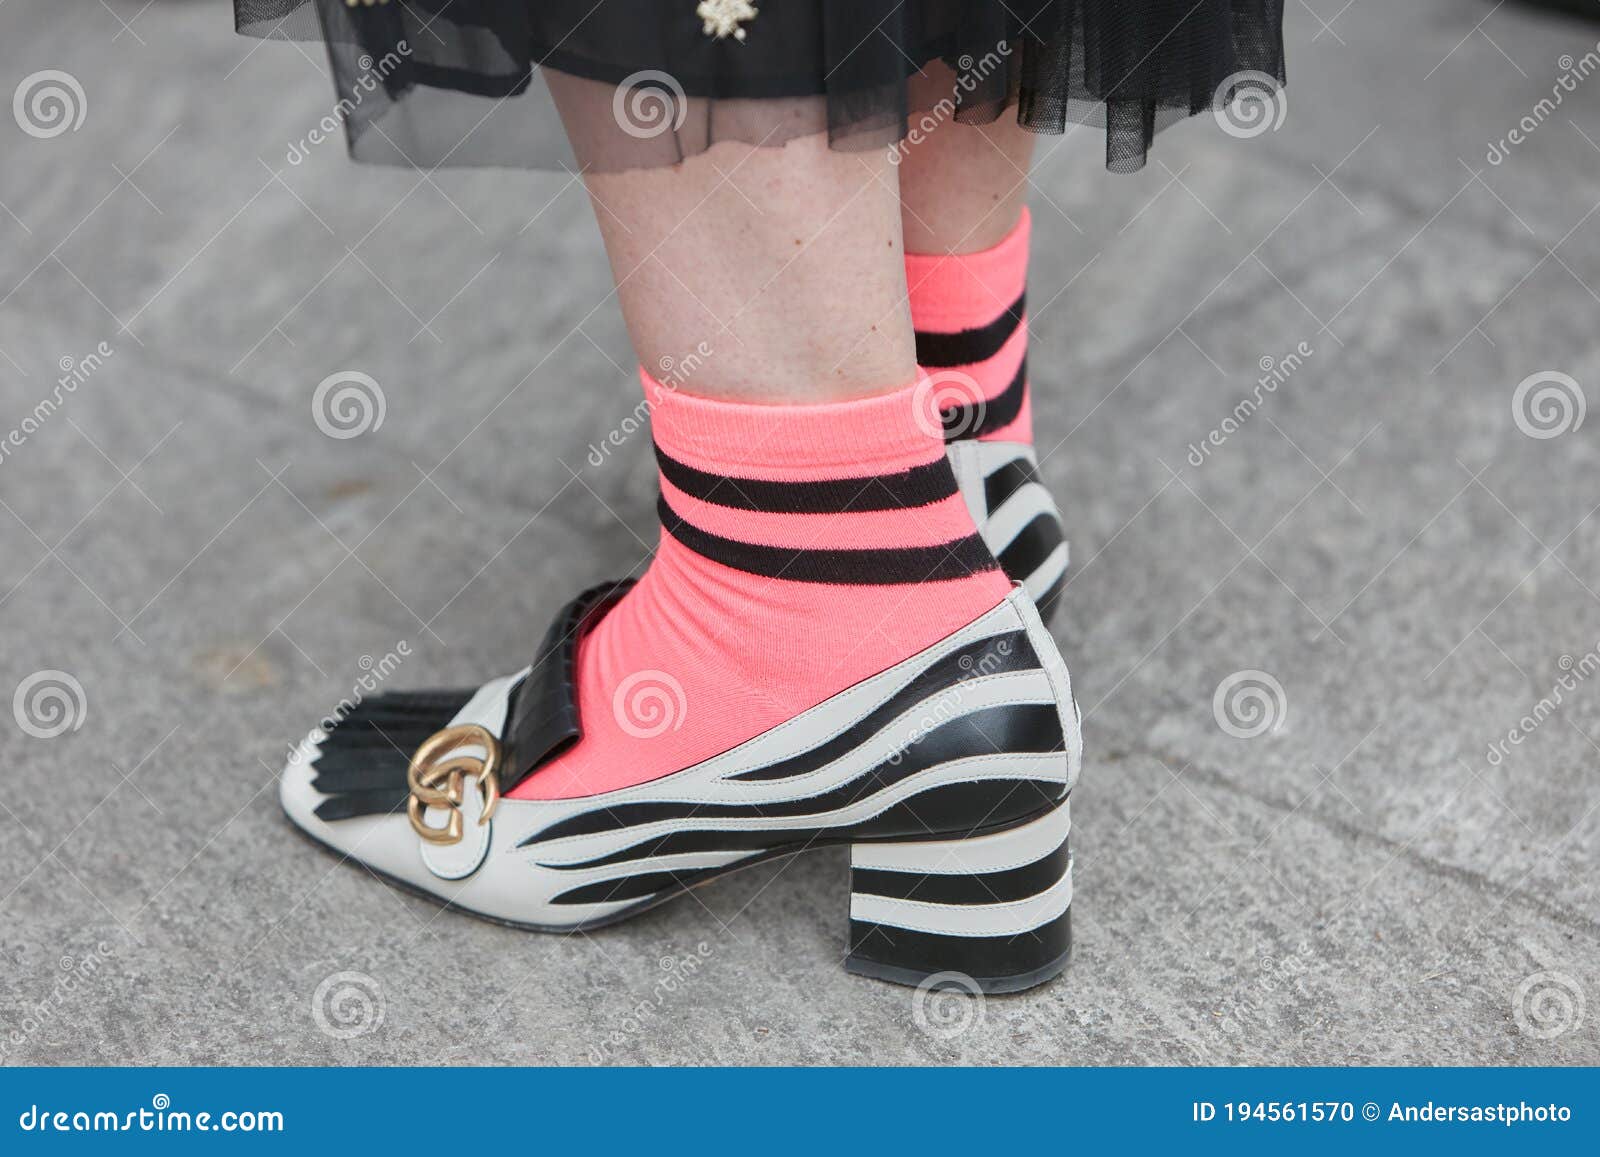 Mujer Zapatos Gucci Negros Y Blancos Y Calcetines Rosas Antes De La Semana De La Giorgio Armani Imagen editorial - Imagen de gente, estilo: 194561570